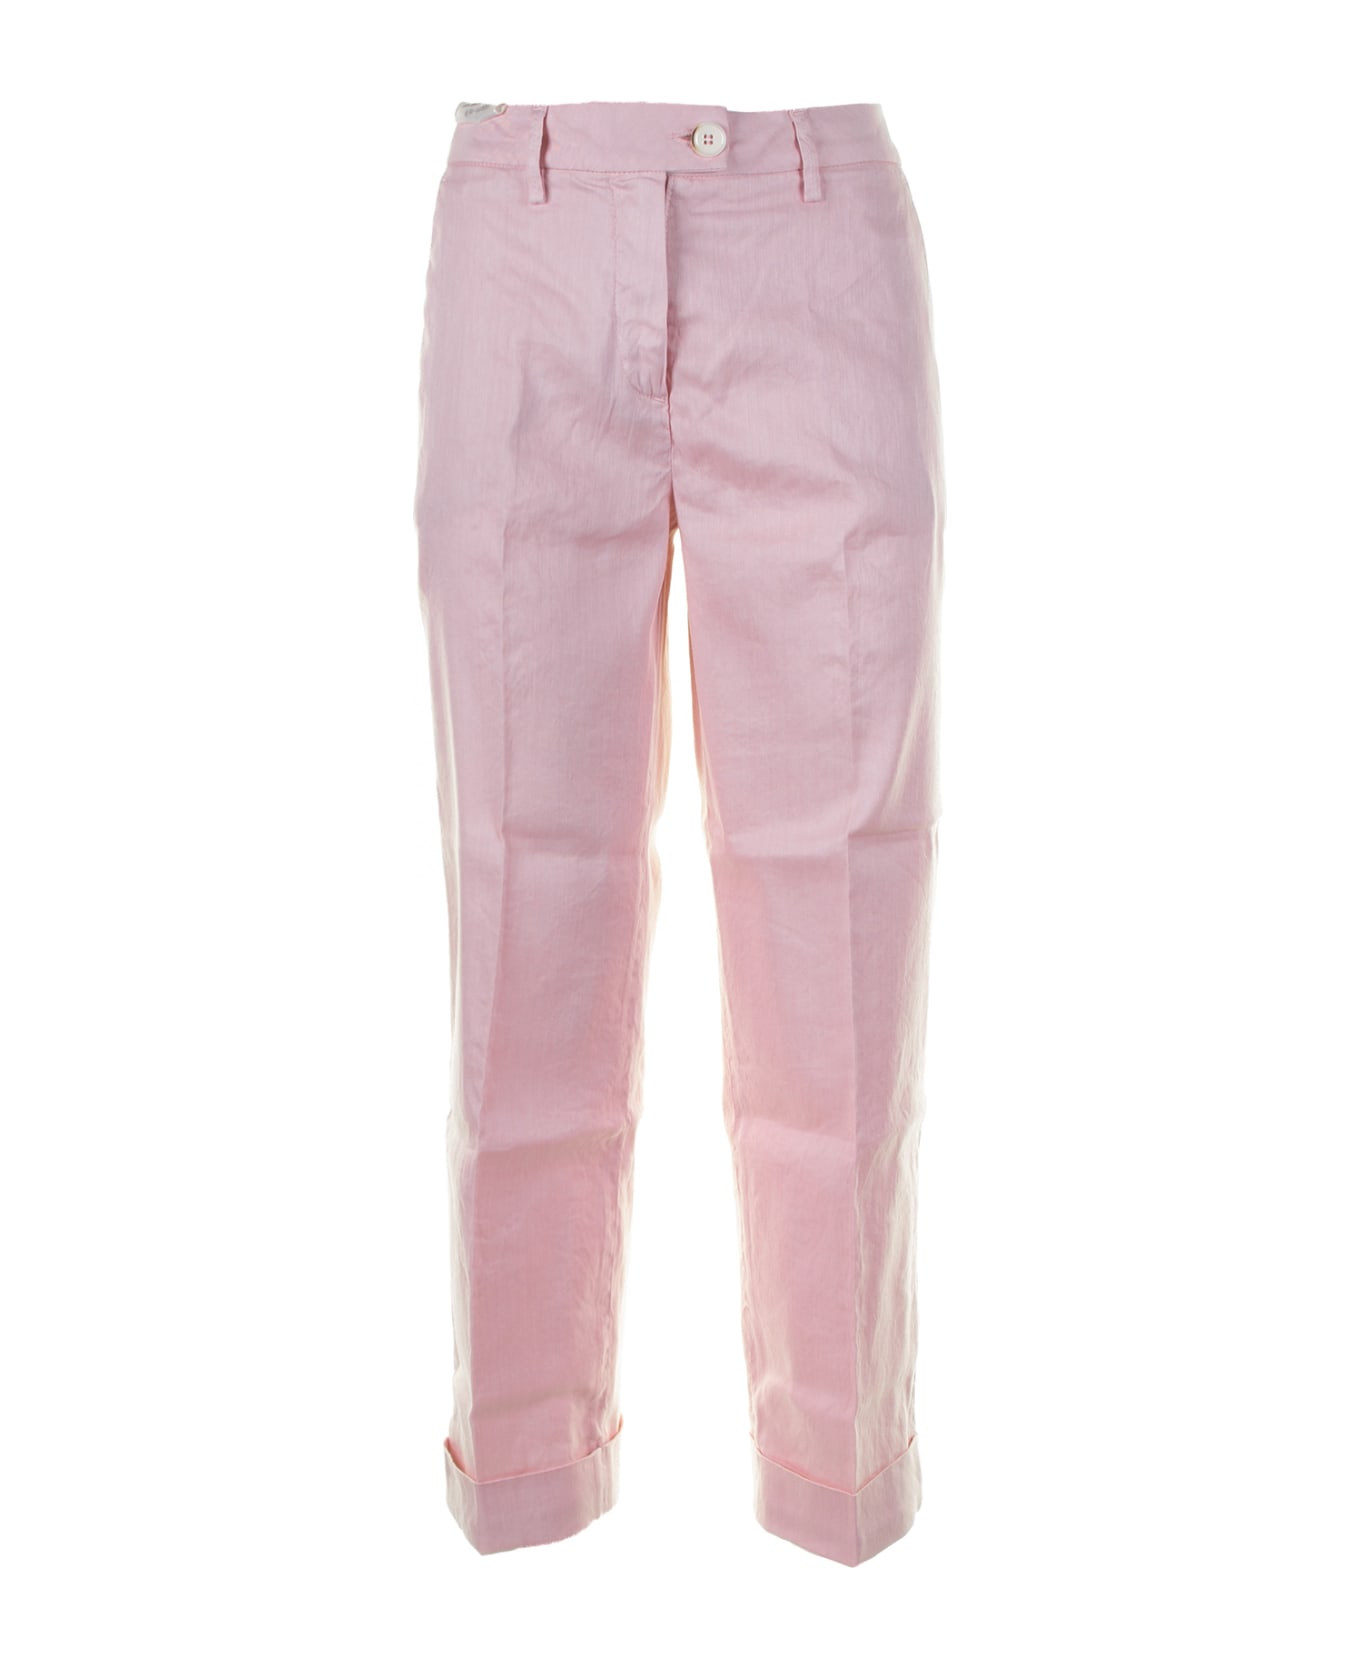 Re-HasH Pink Chino Pants - CIPRIA